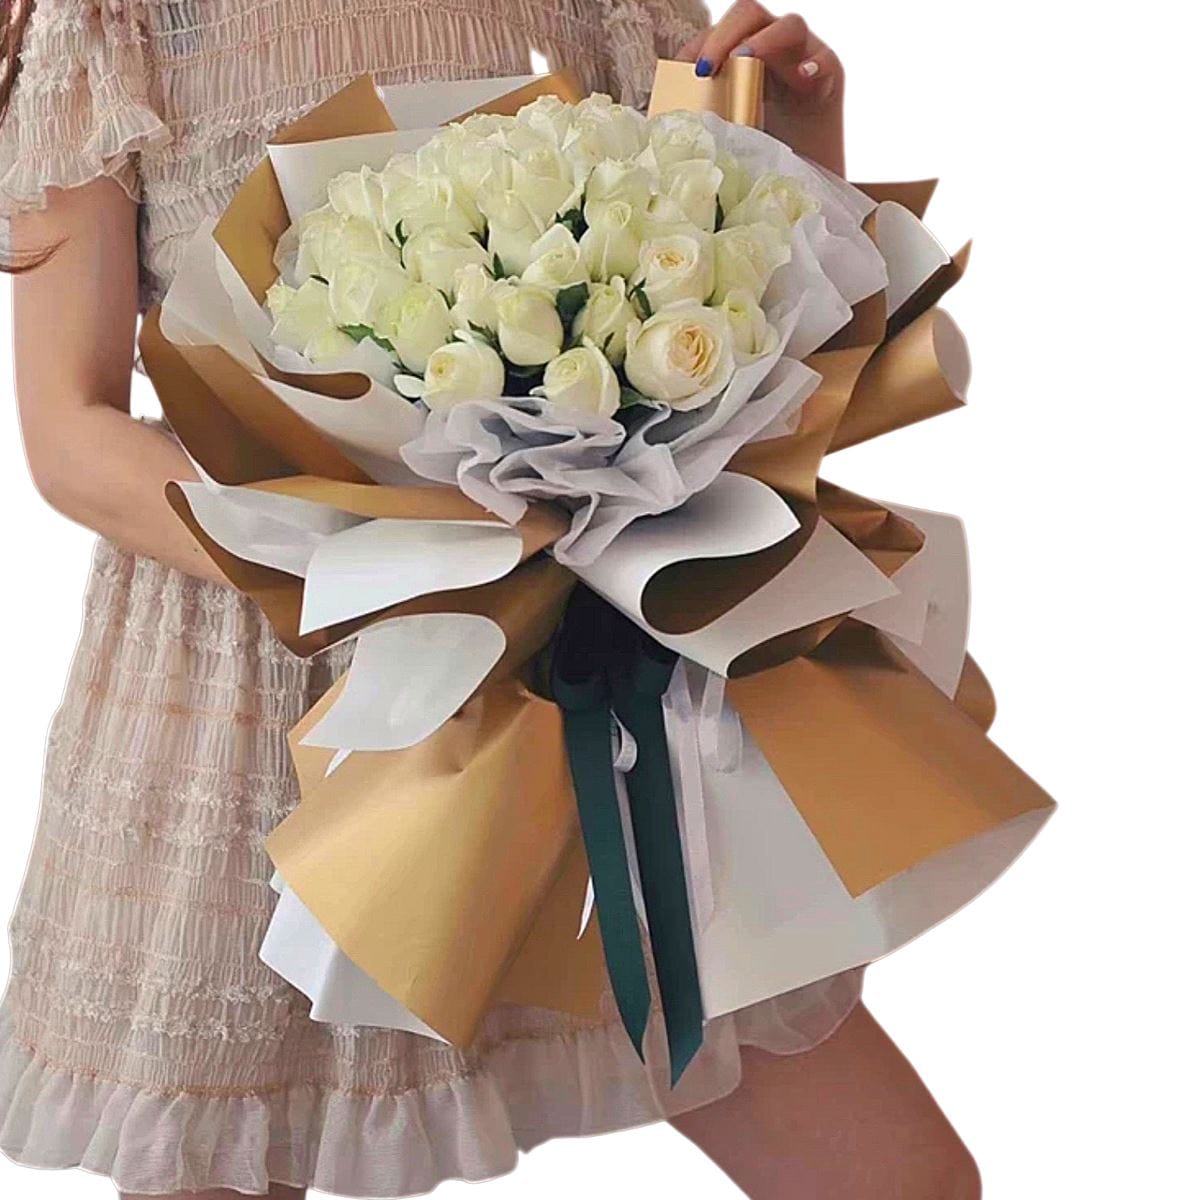 Grand Innocence - Flower - Preserved Flowers & Fresh Flower Florist Gift Store